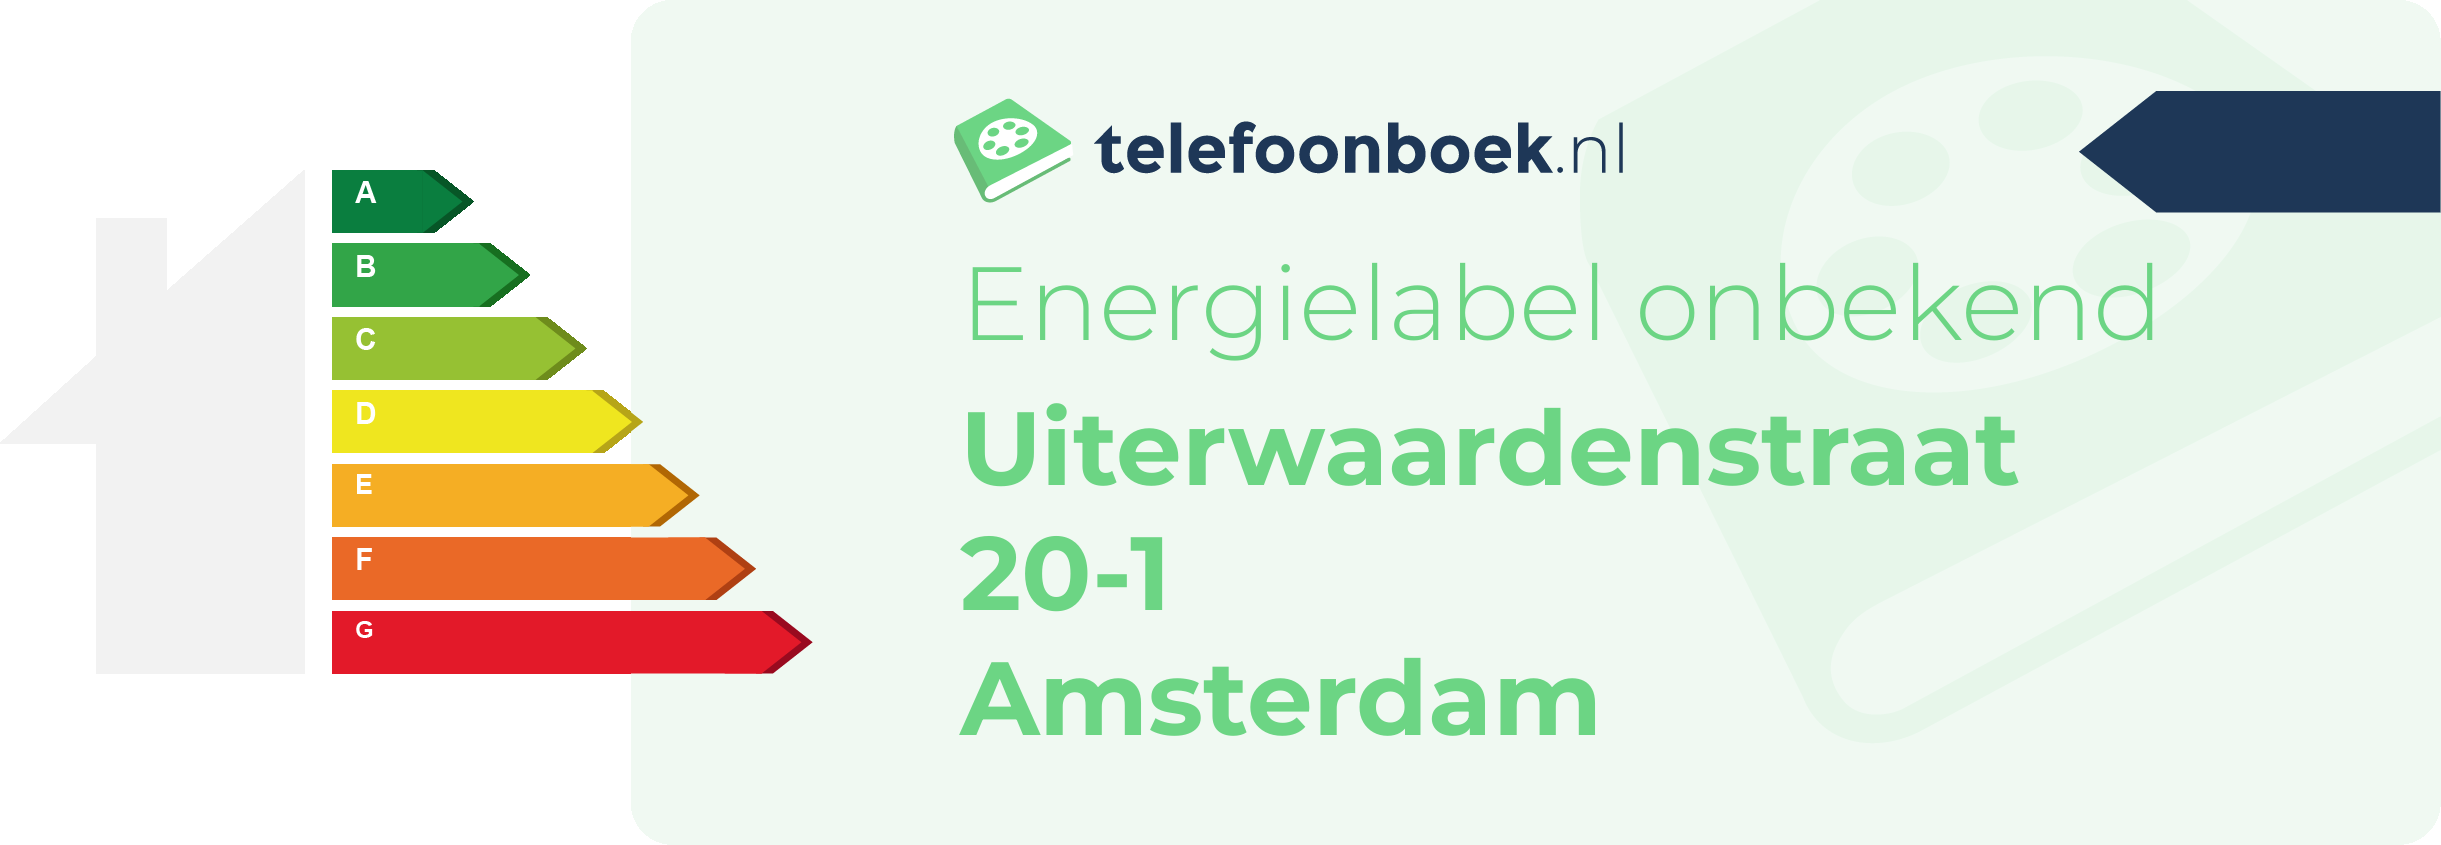 Energielabel Uiterwaardenstraat 20-1 Amsterdam